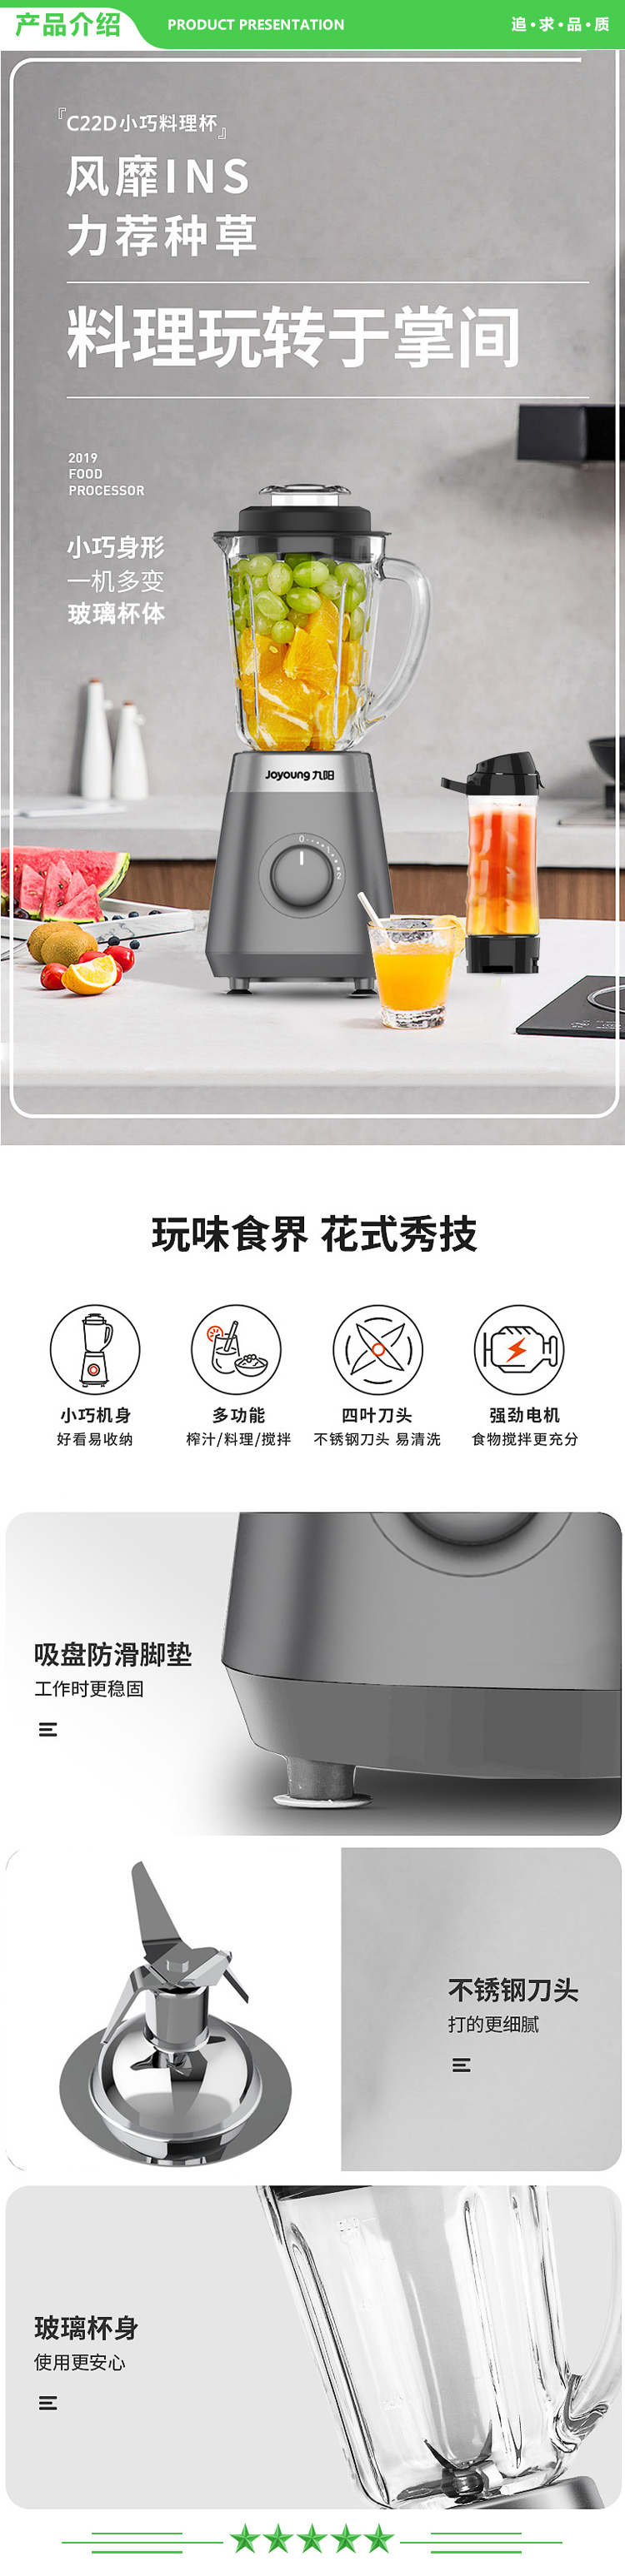 九阳 Joyoung L6-C22D 料理机 榨汁搅拌机便携果汁机多功能碎冰机辅食机 灰色 玻璃杯 250w.jpg